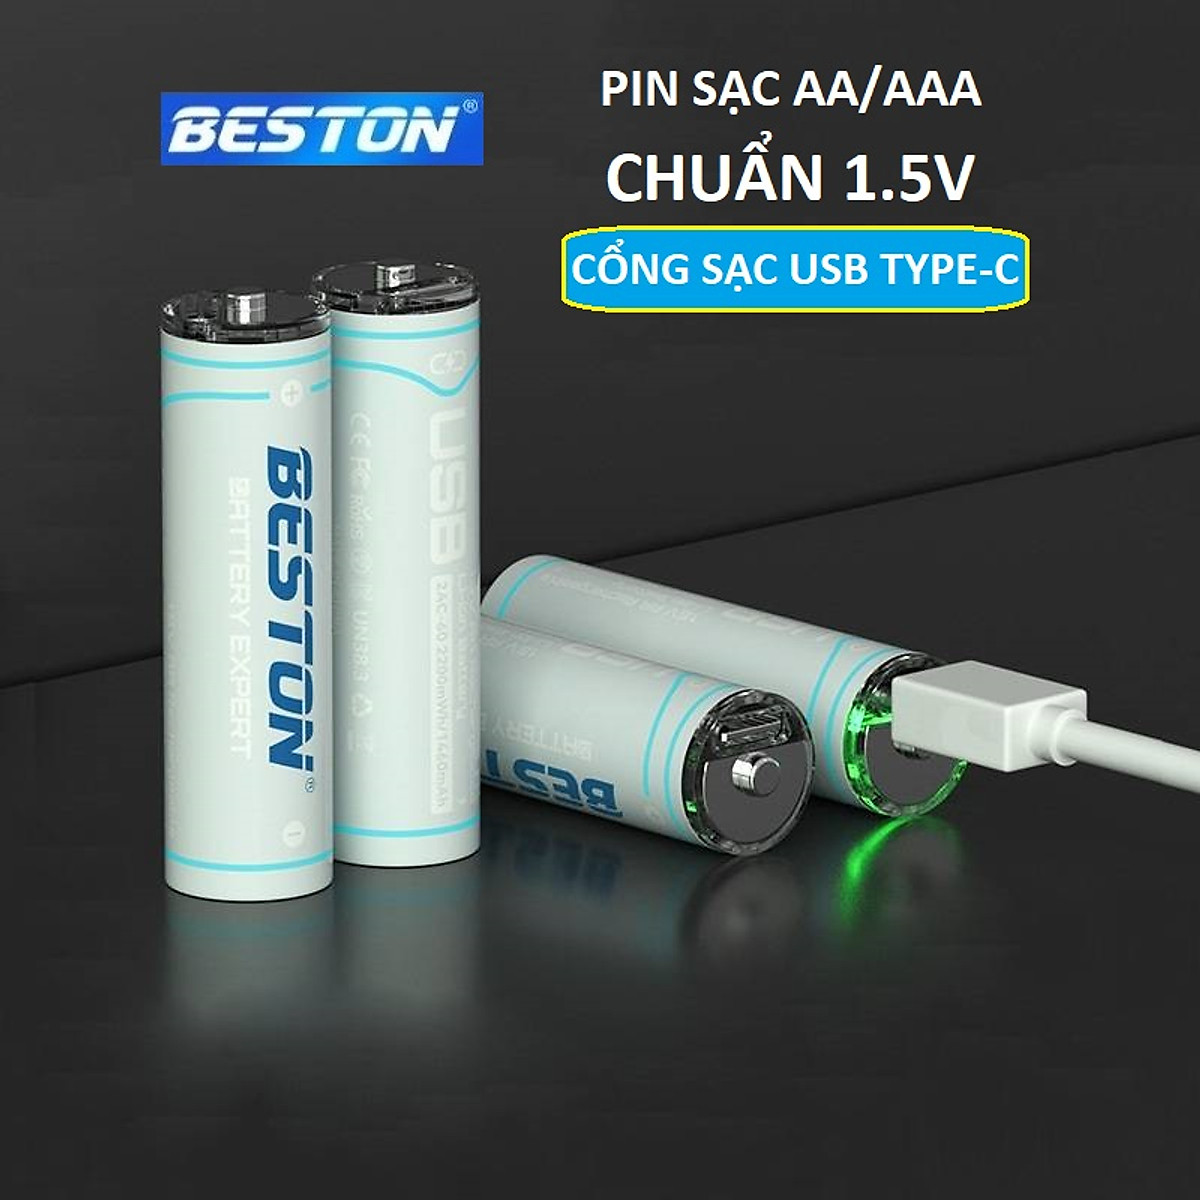 Vỉ 4 Pin sạc AA AAA chuẩn 1.5V Beston Dung lượng cao đến 2200mWh sạc trực tiếp qua cổng USB type-C dùng cho micro, đồ chơi, đồng hồ, máy ảnh - hàng nhập khẩu